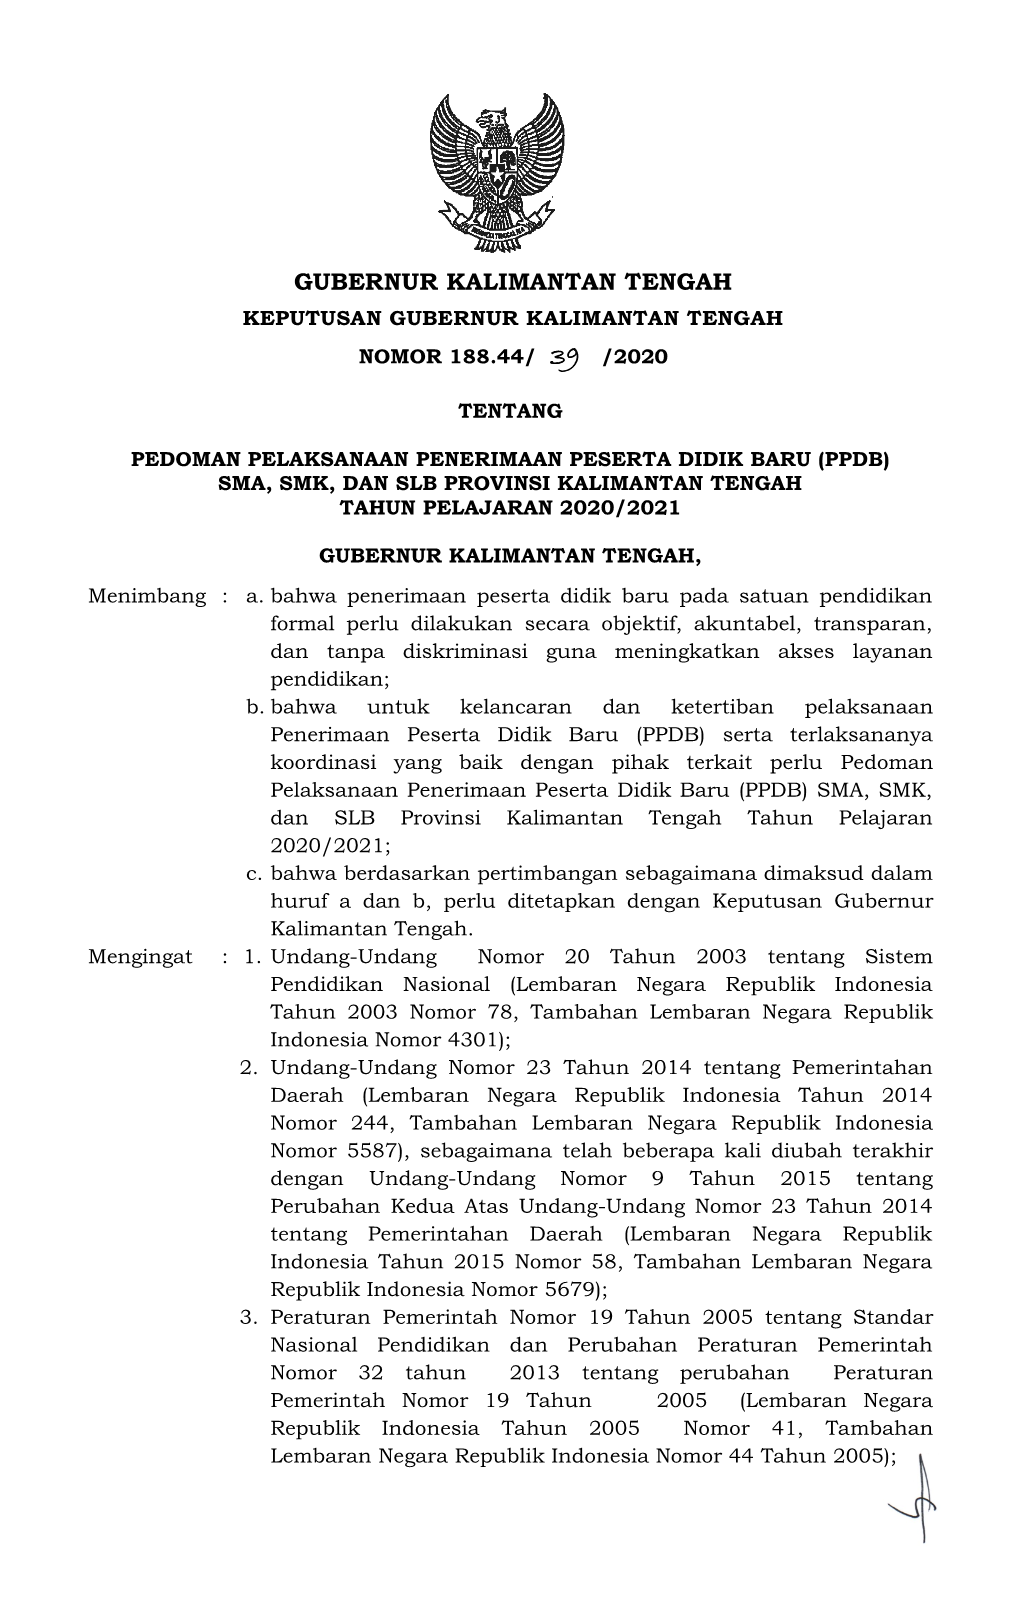 Gubernur Kalimantan Tengah Keputusan Gubernur Kalimantan Tengah Nomor 188.44/ 39 /2020